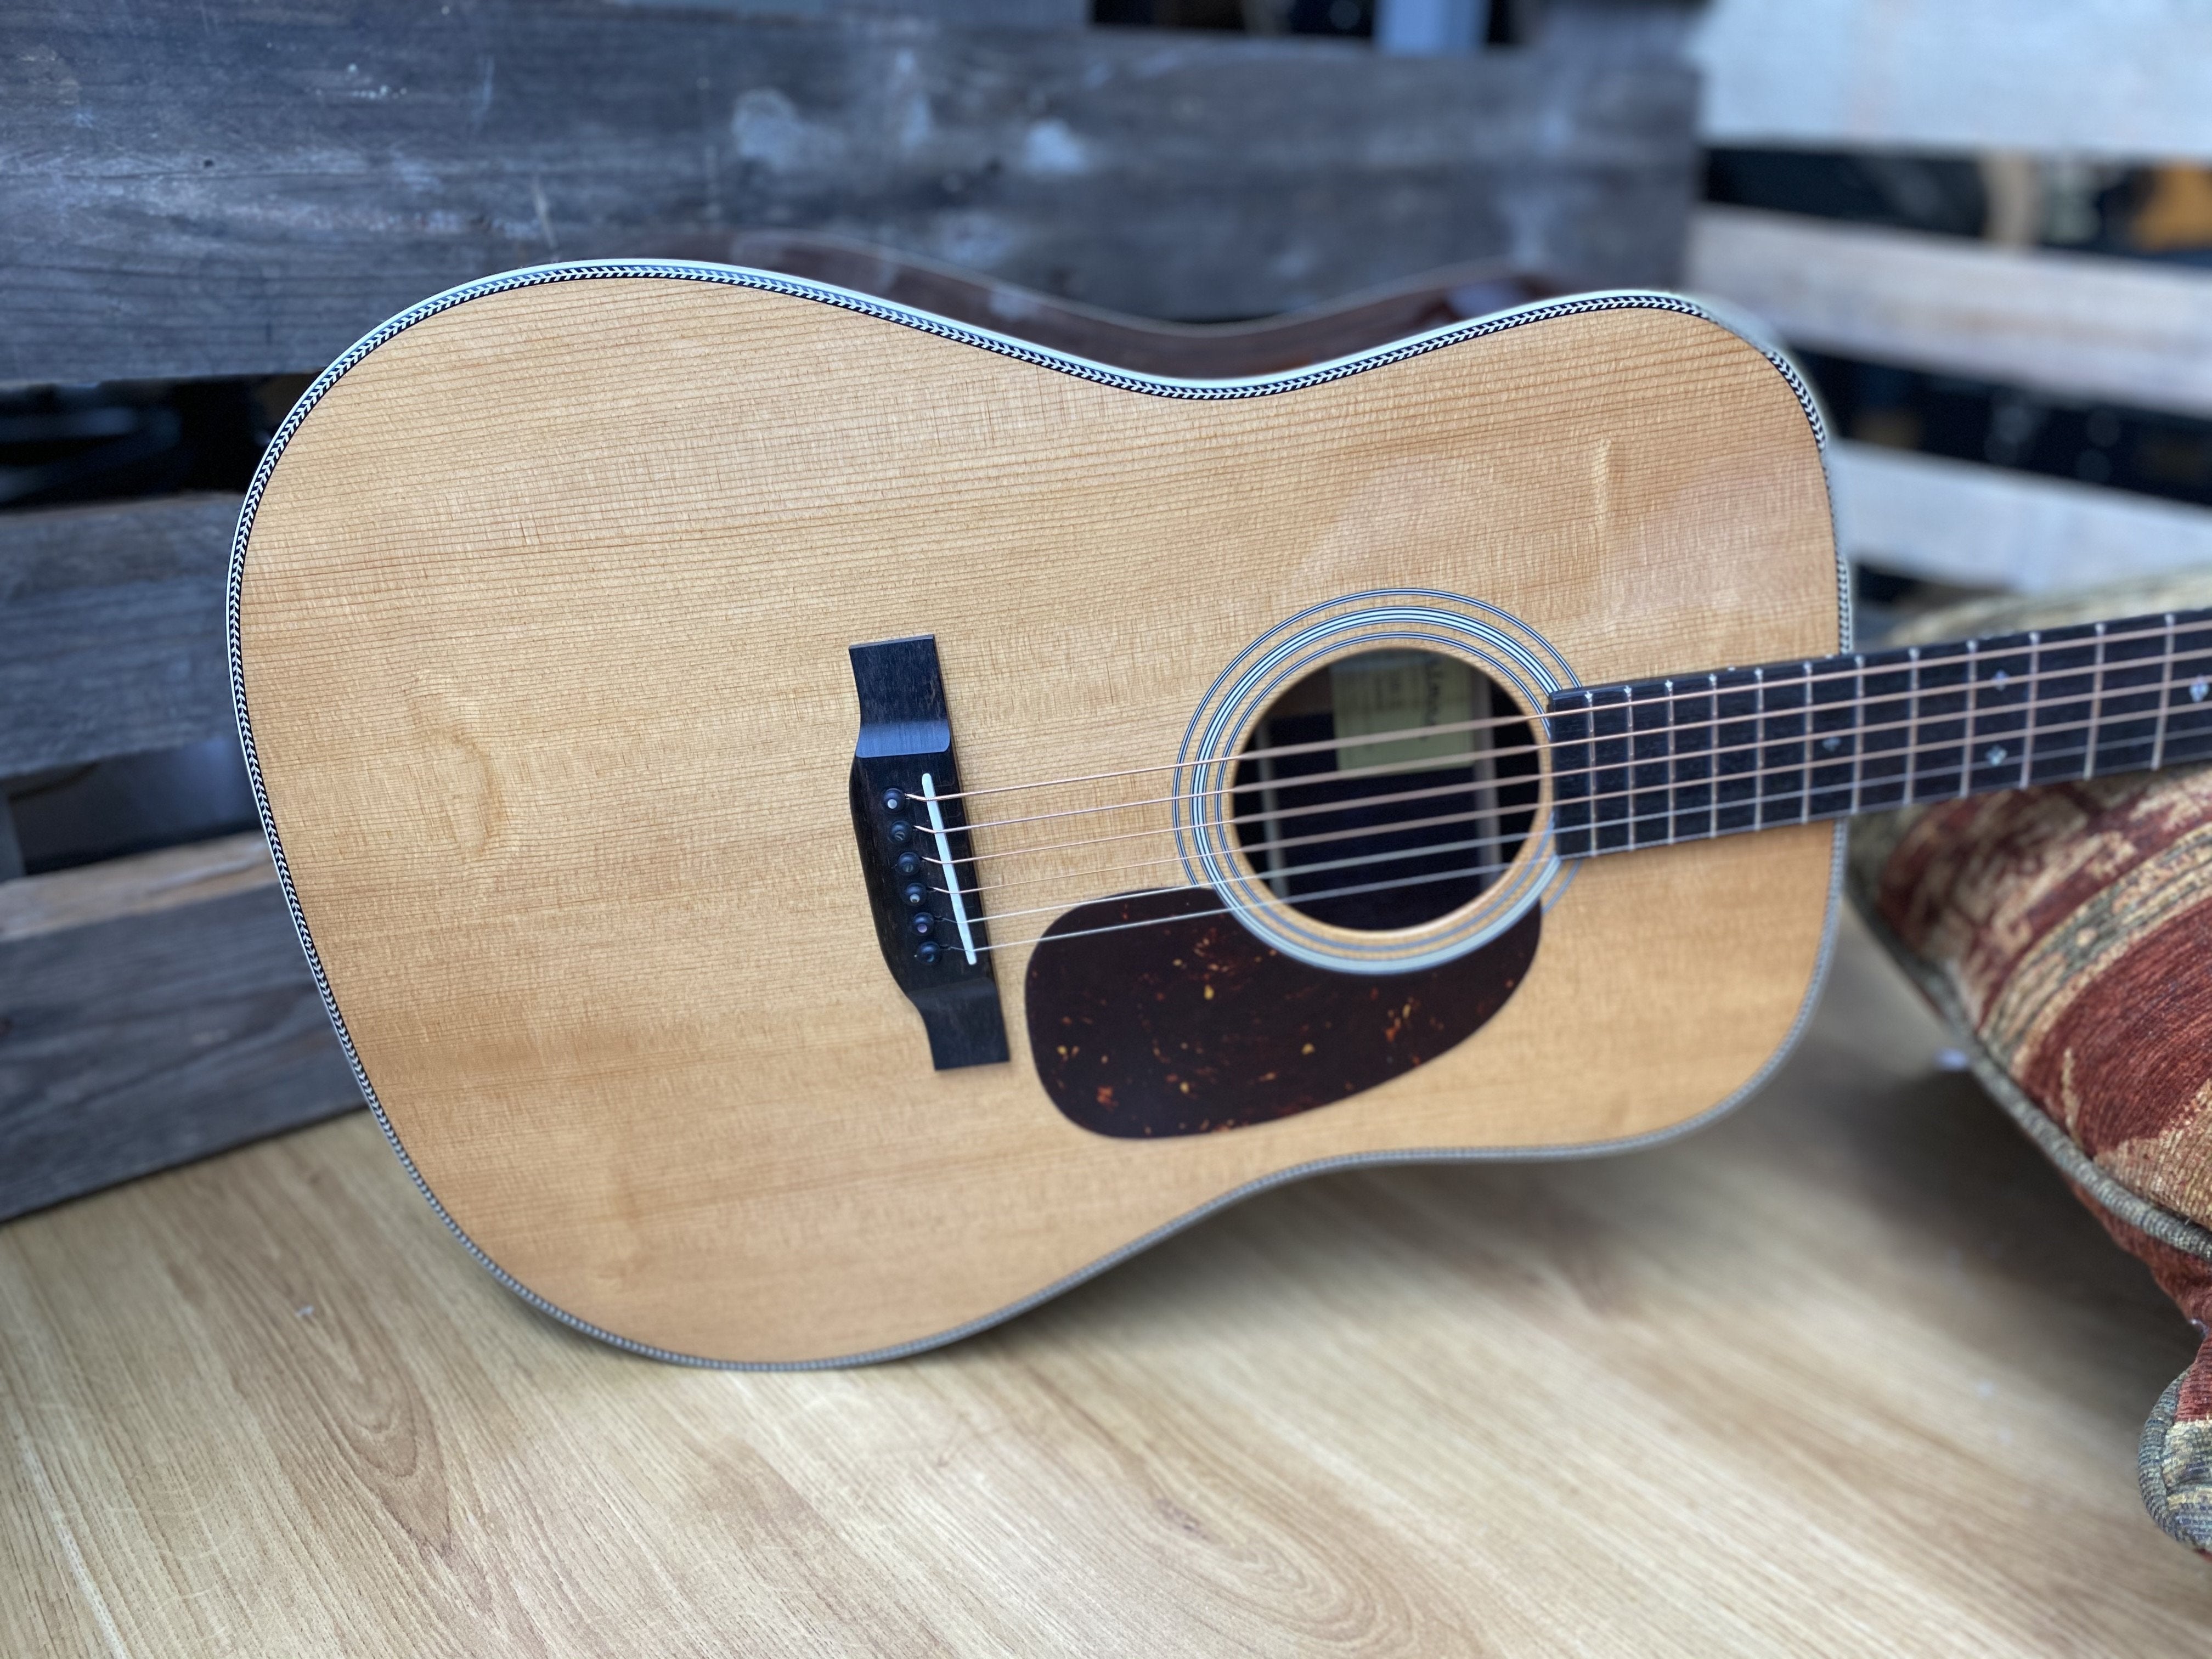 Eastman E8D TC, Acoustic Guitar for sale at Richards Guitars.